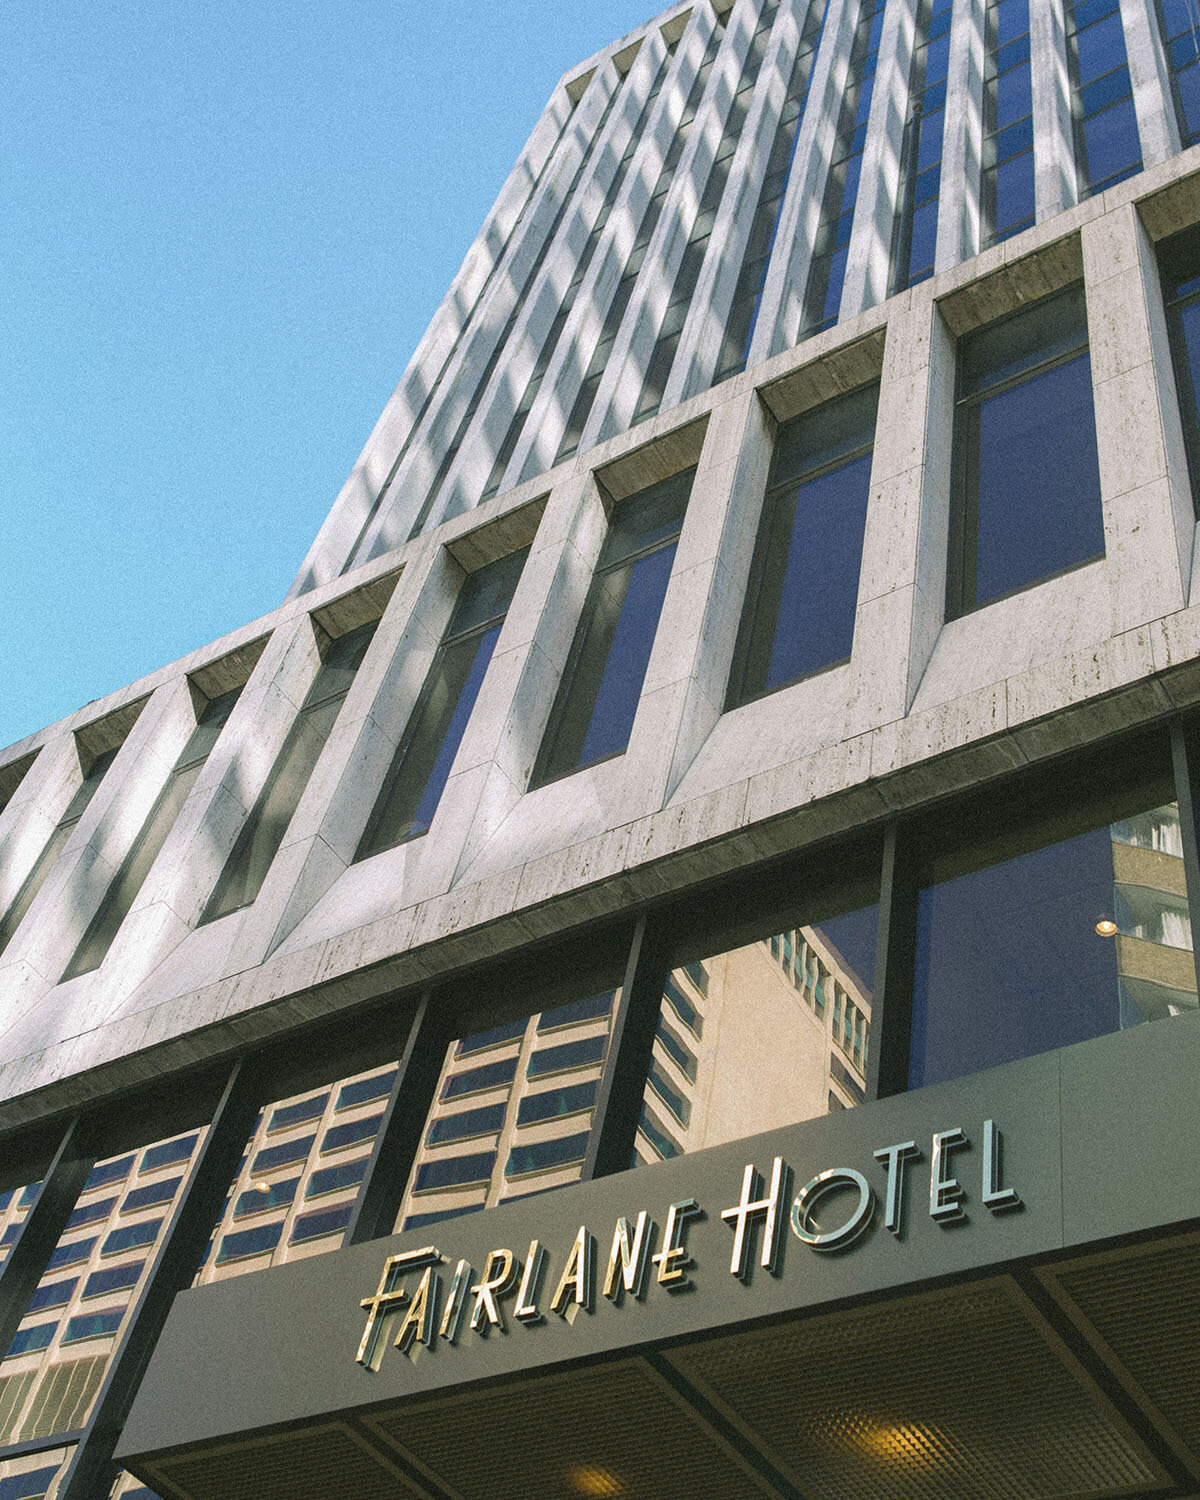 Fairlane Hotel Nashville, by Oliver image